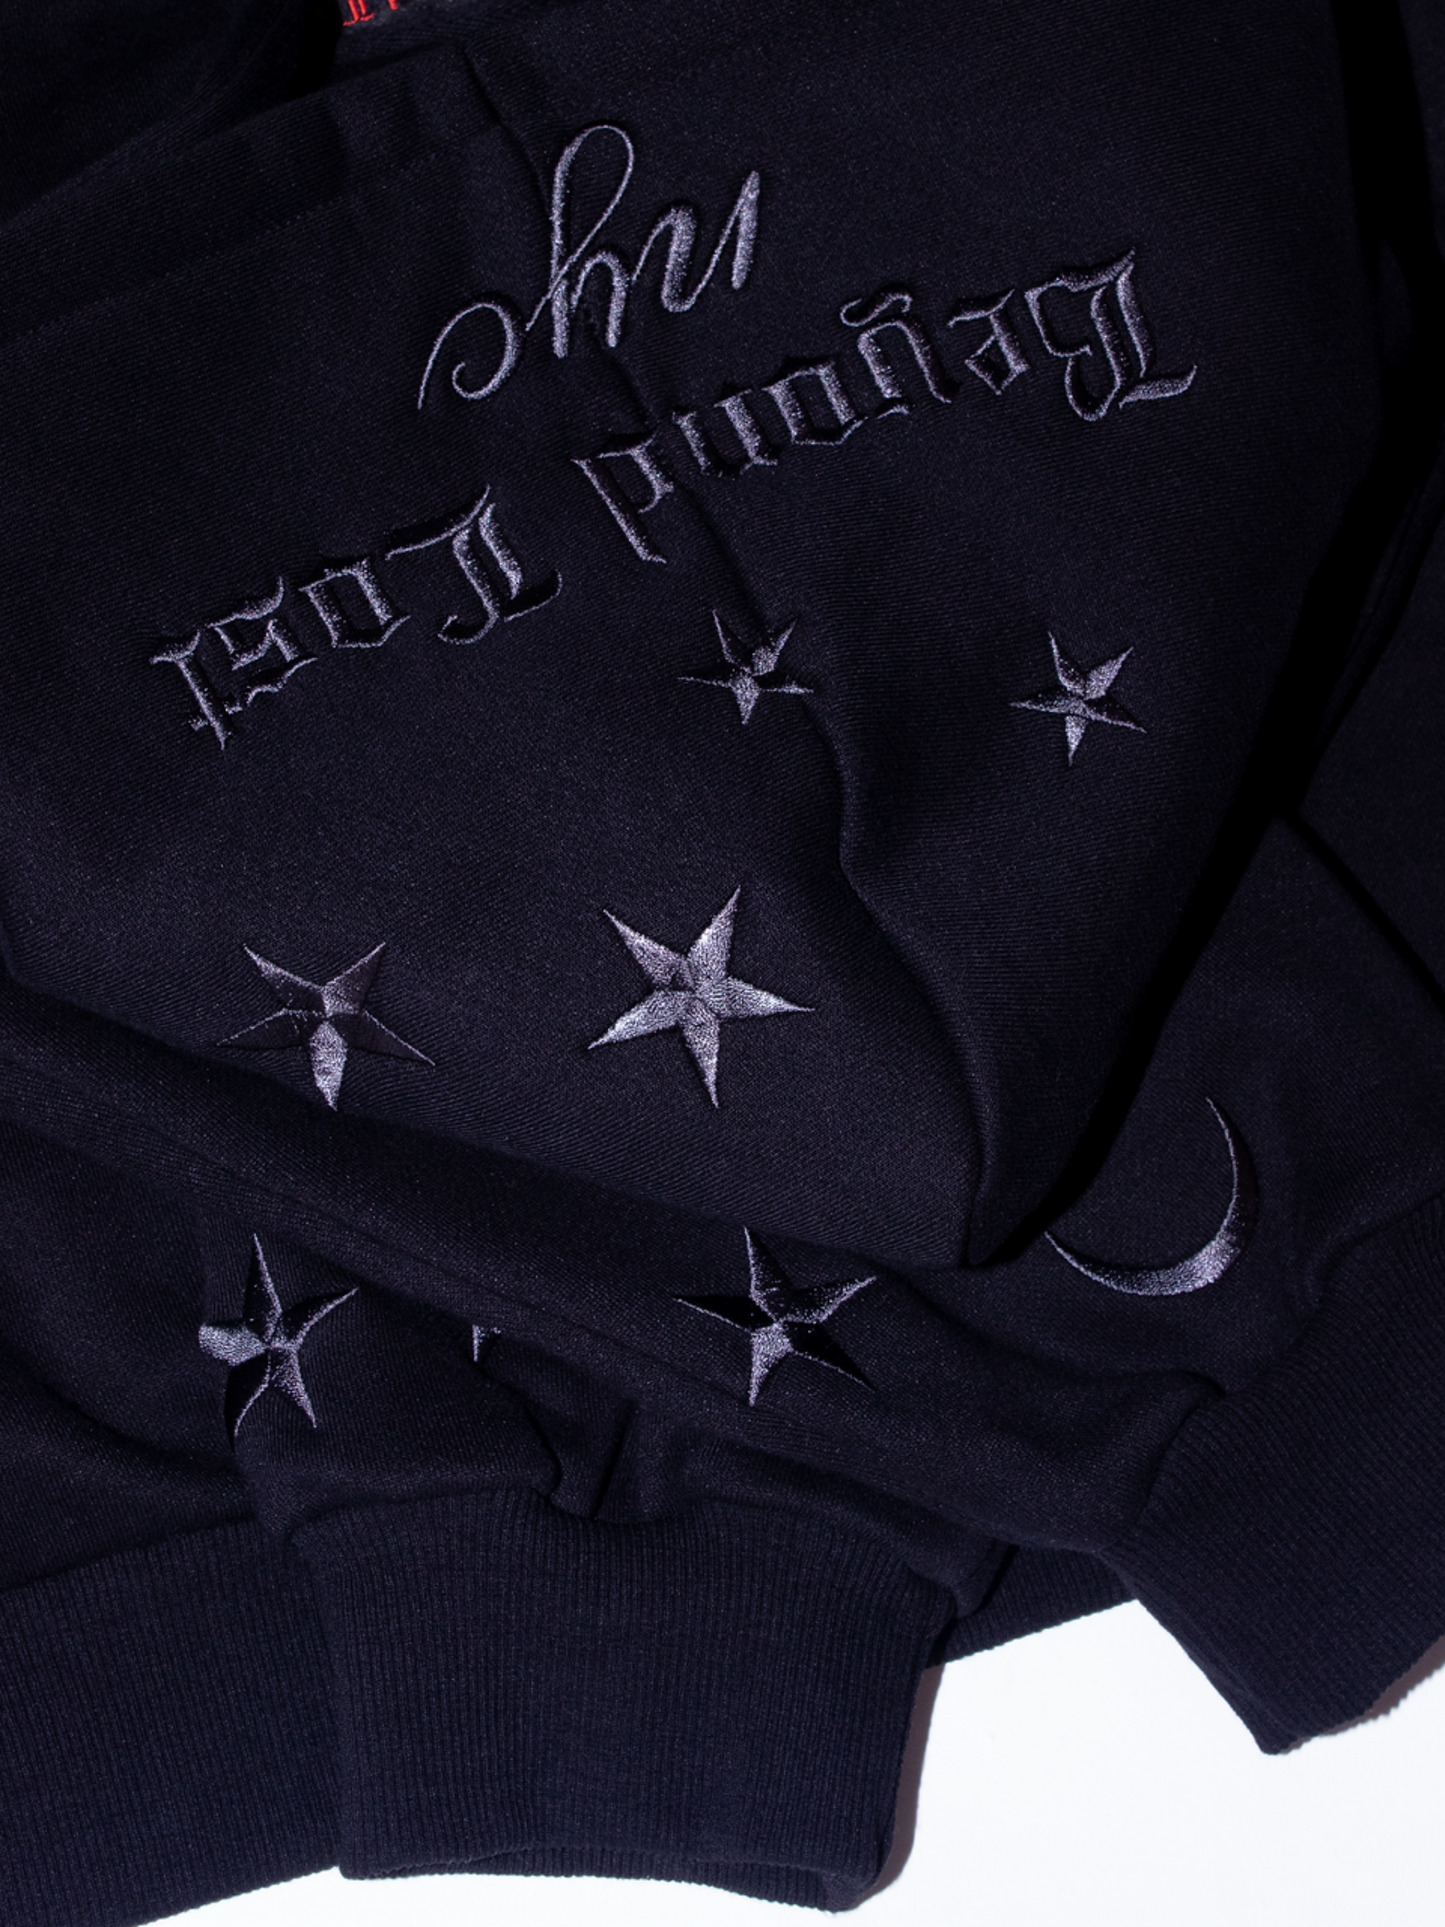 Black Moon & Stars Zip Up Hoodie: Black Embroidery